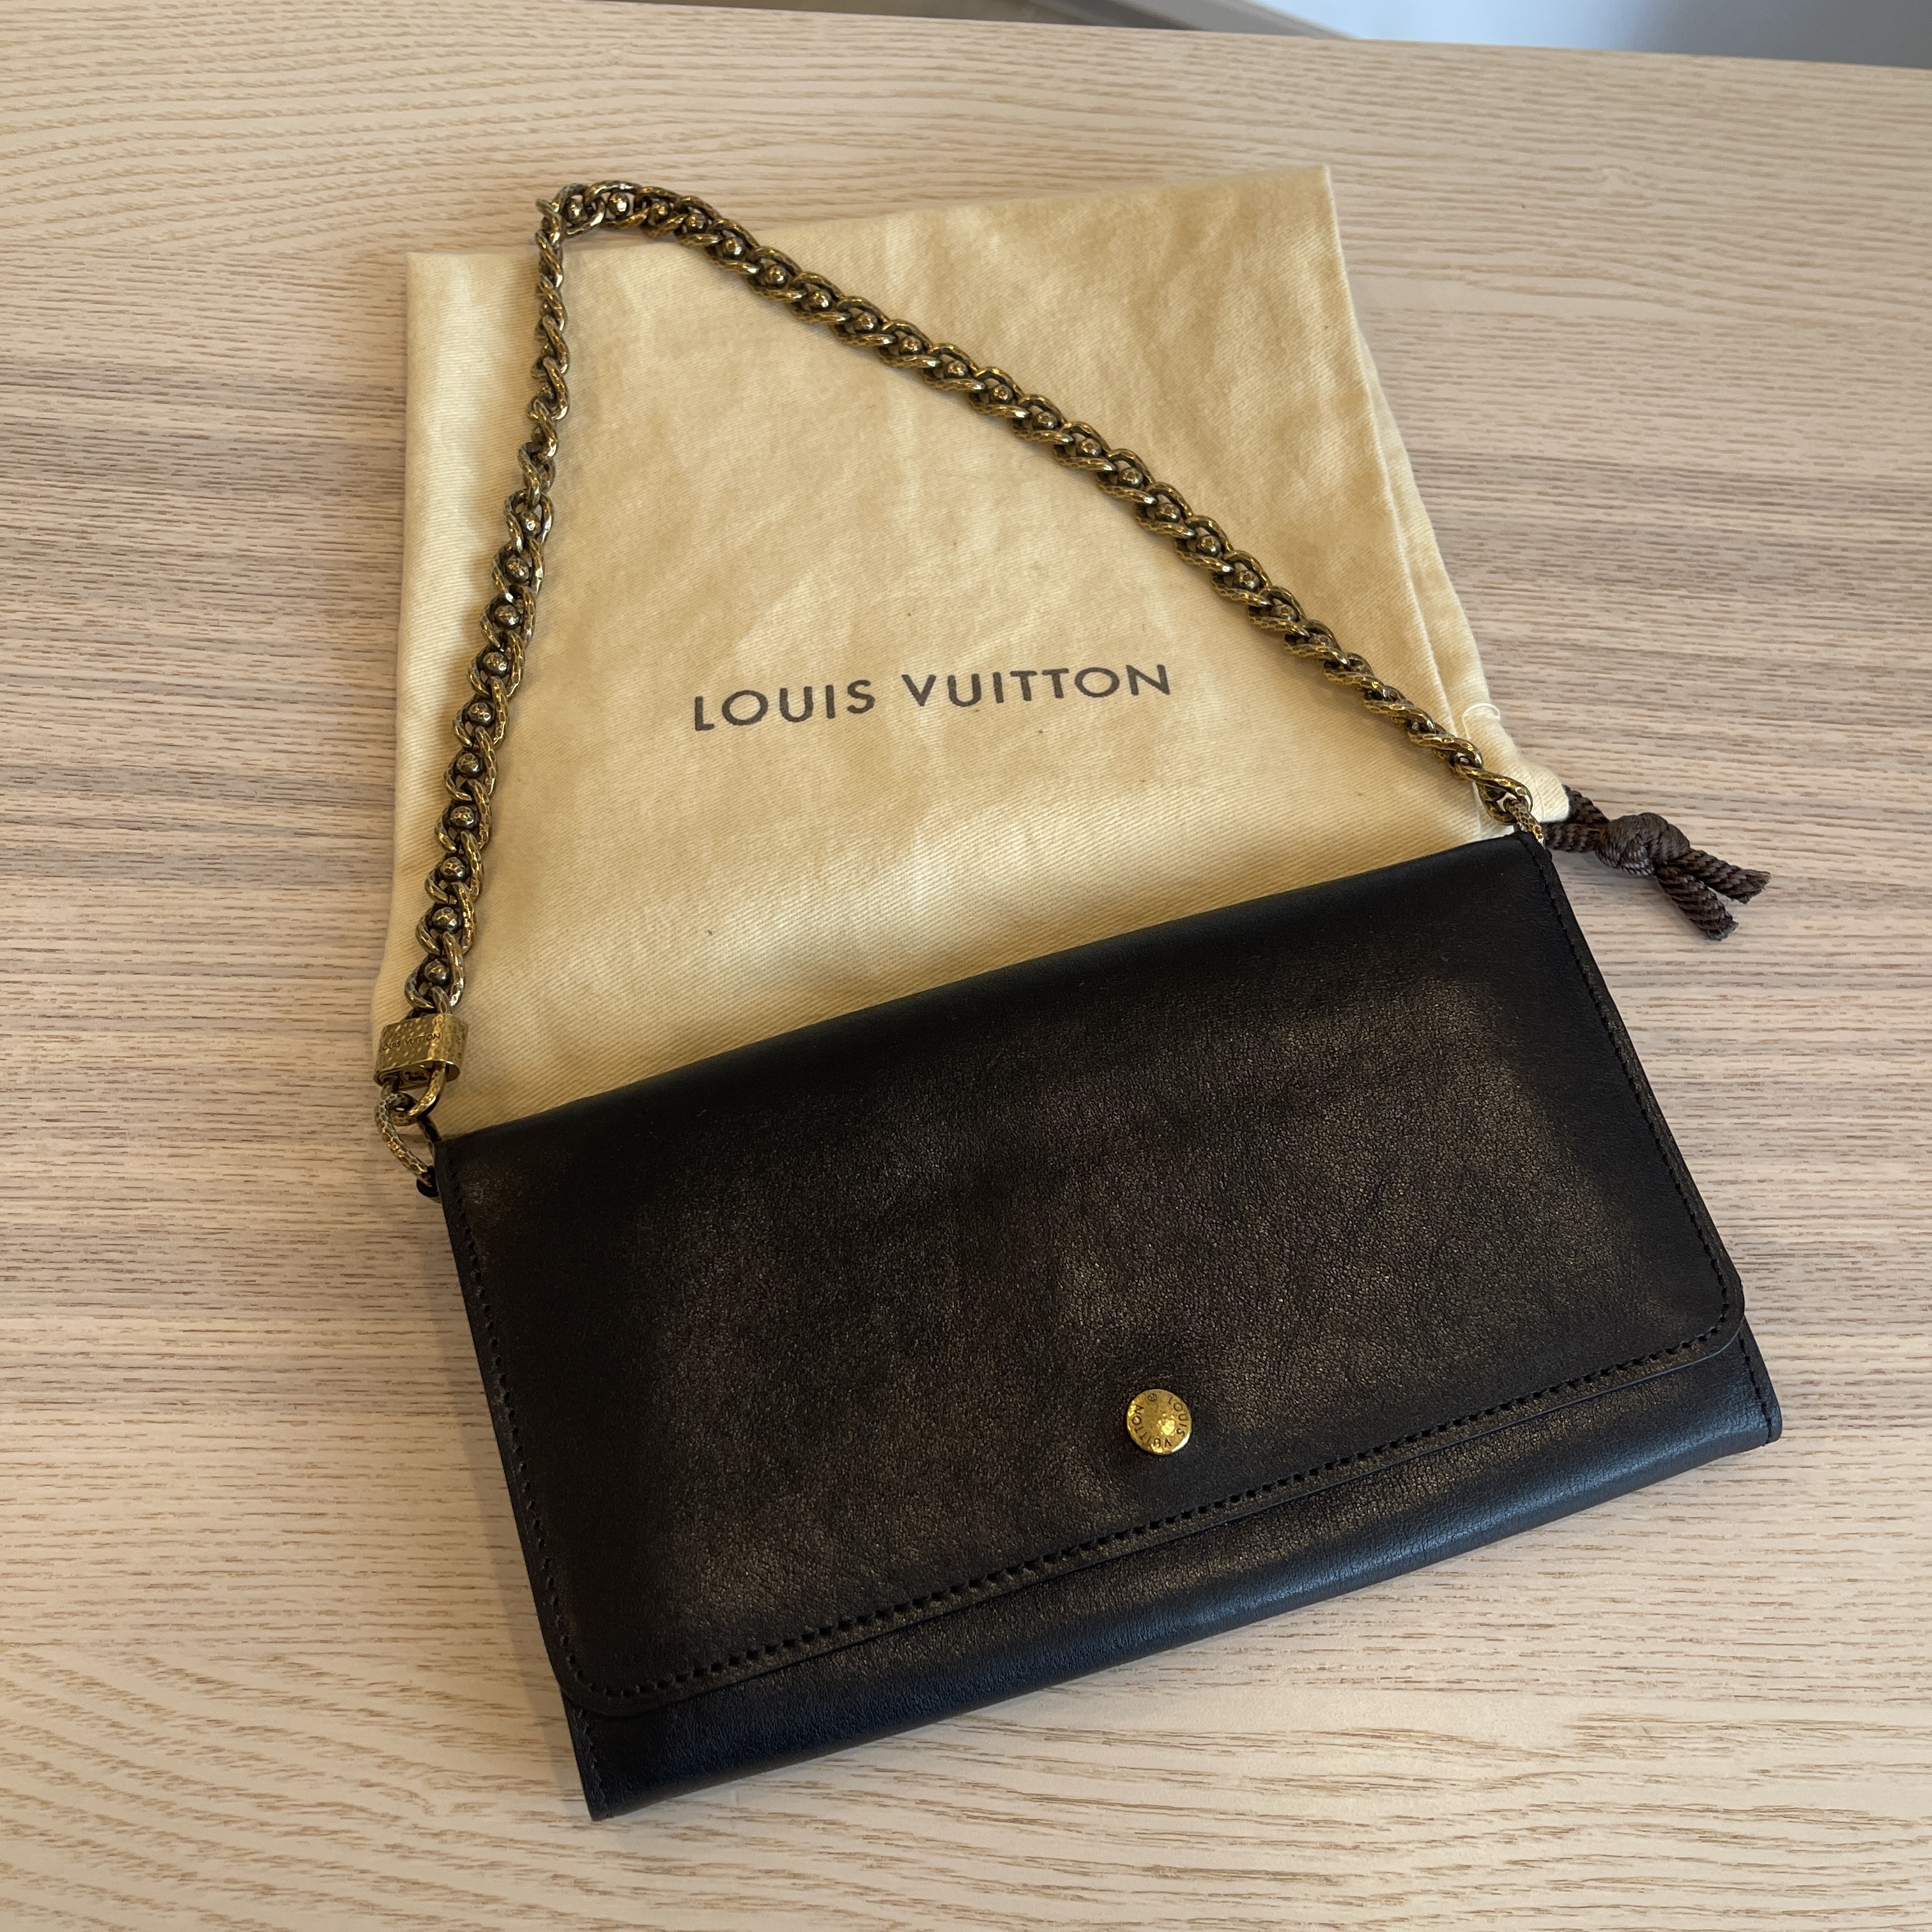 Louis Vuitton, Bags, Authentic Louis Vuitton Sarah Wallet With Chain